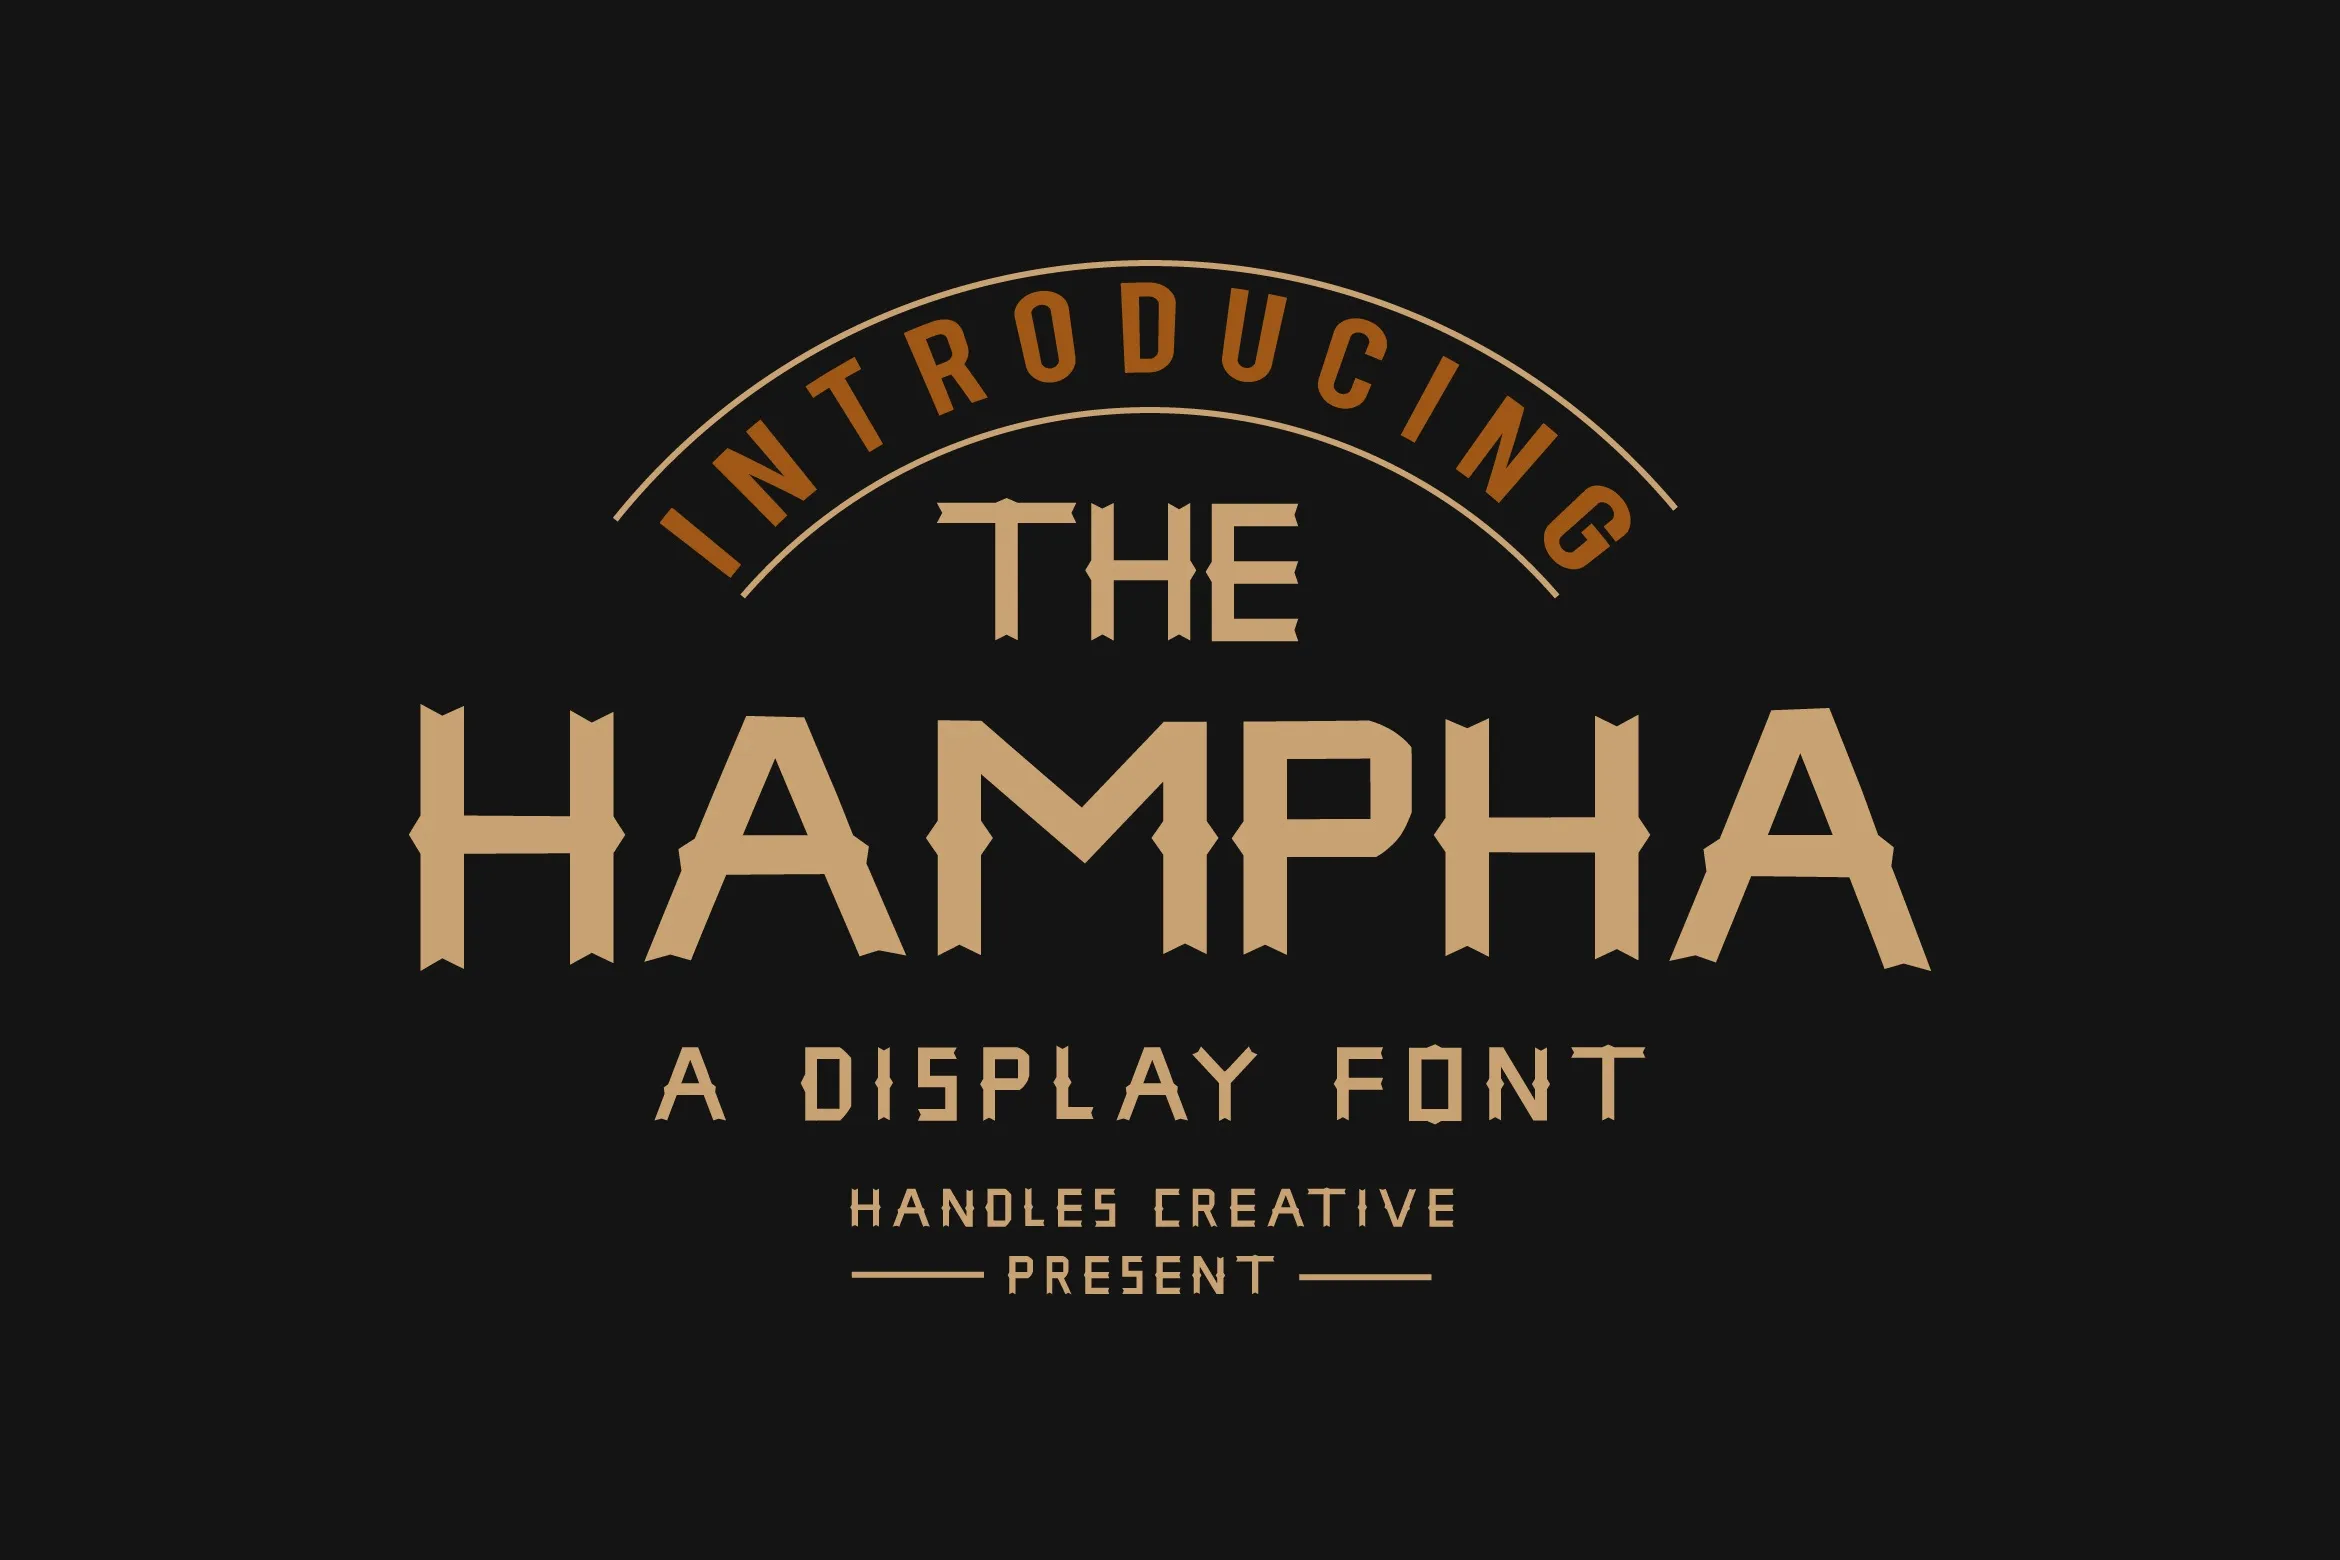 The Hampha Font